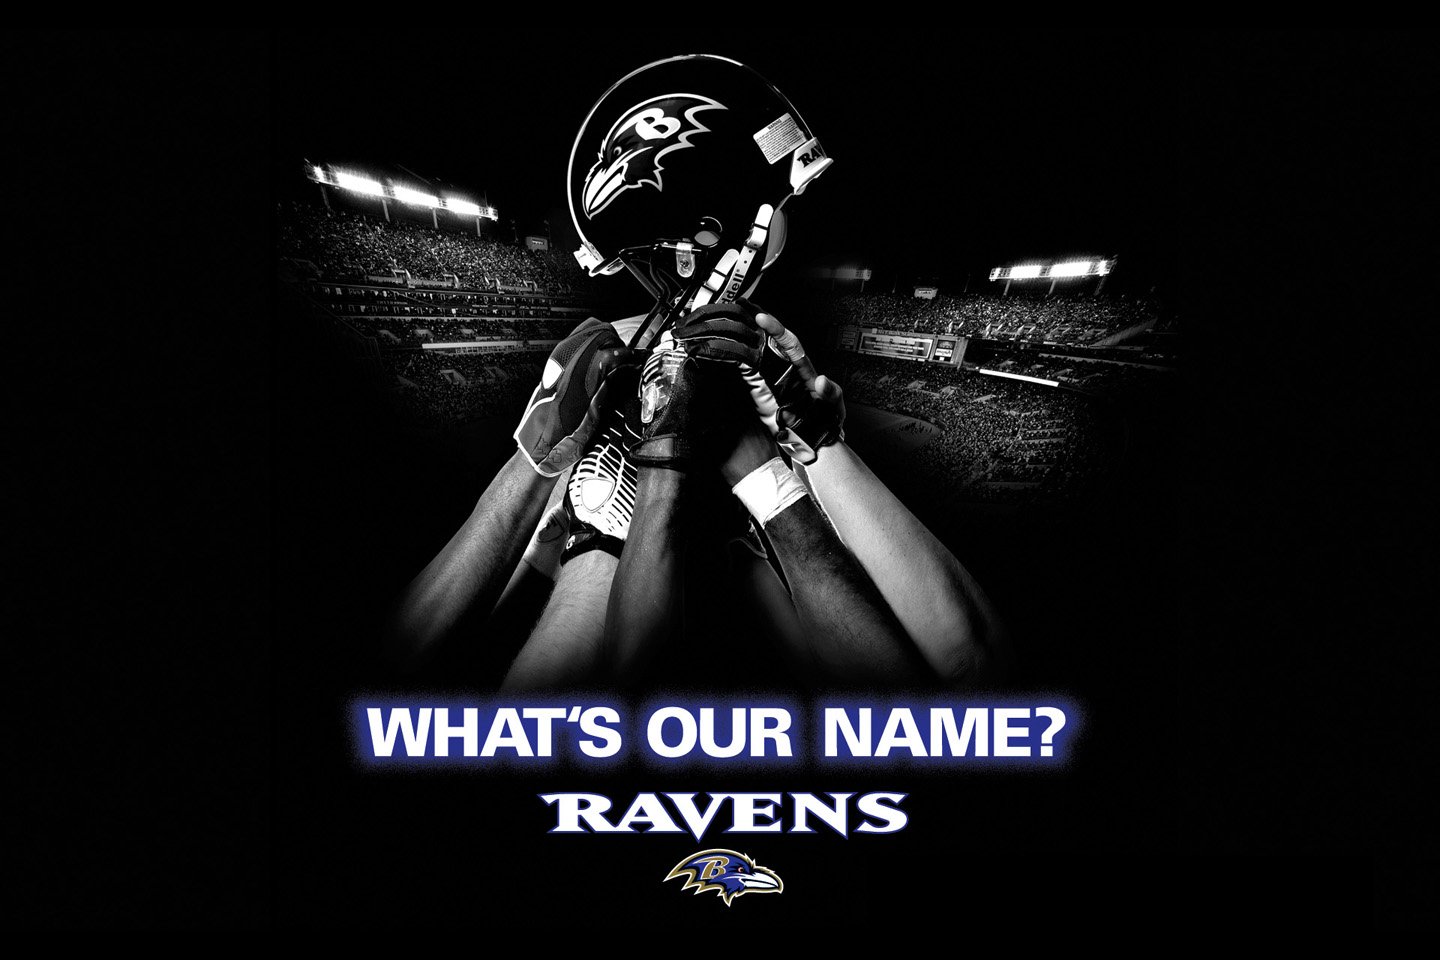  Baltimore Ravens desktop image Baltimore Ravens wallpapers 1440x960